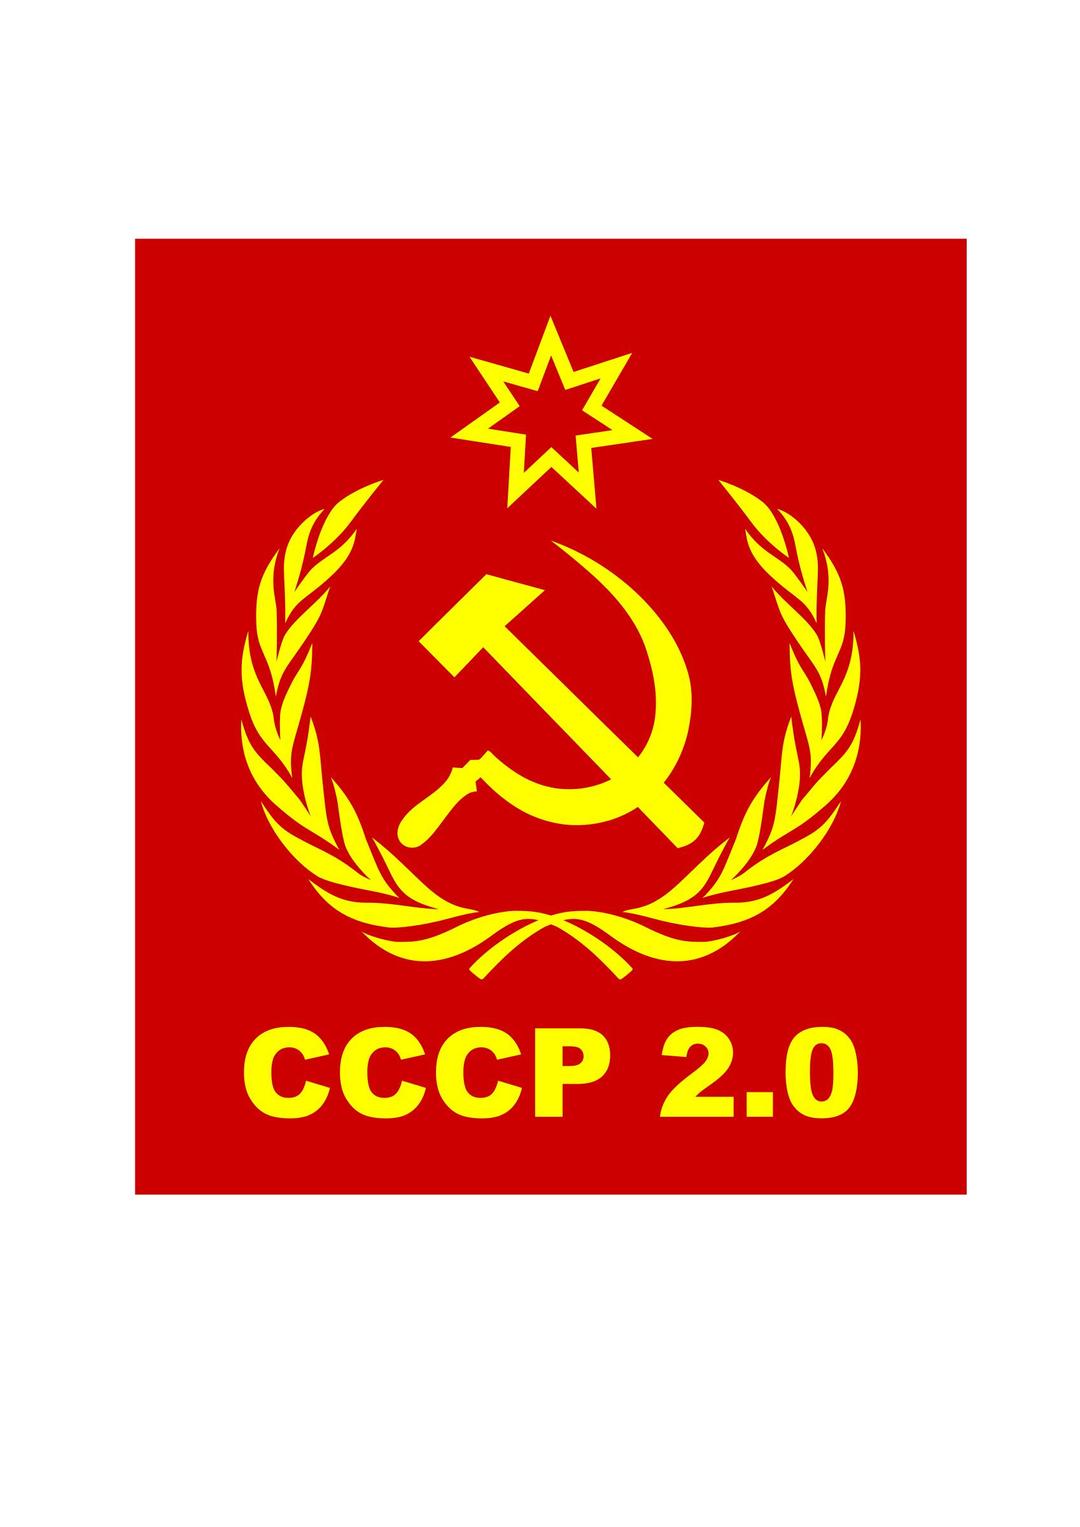 CCCP2.0 flag png transparent